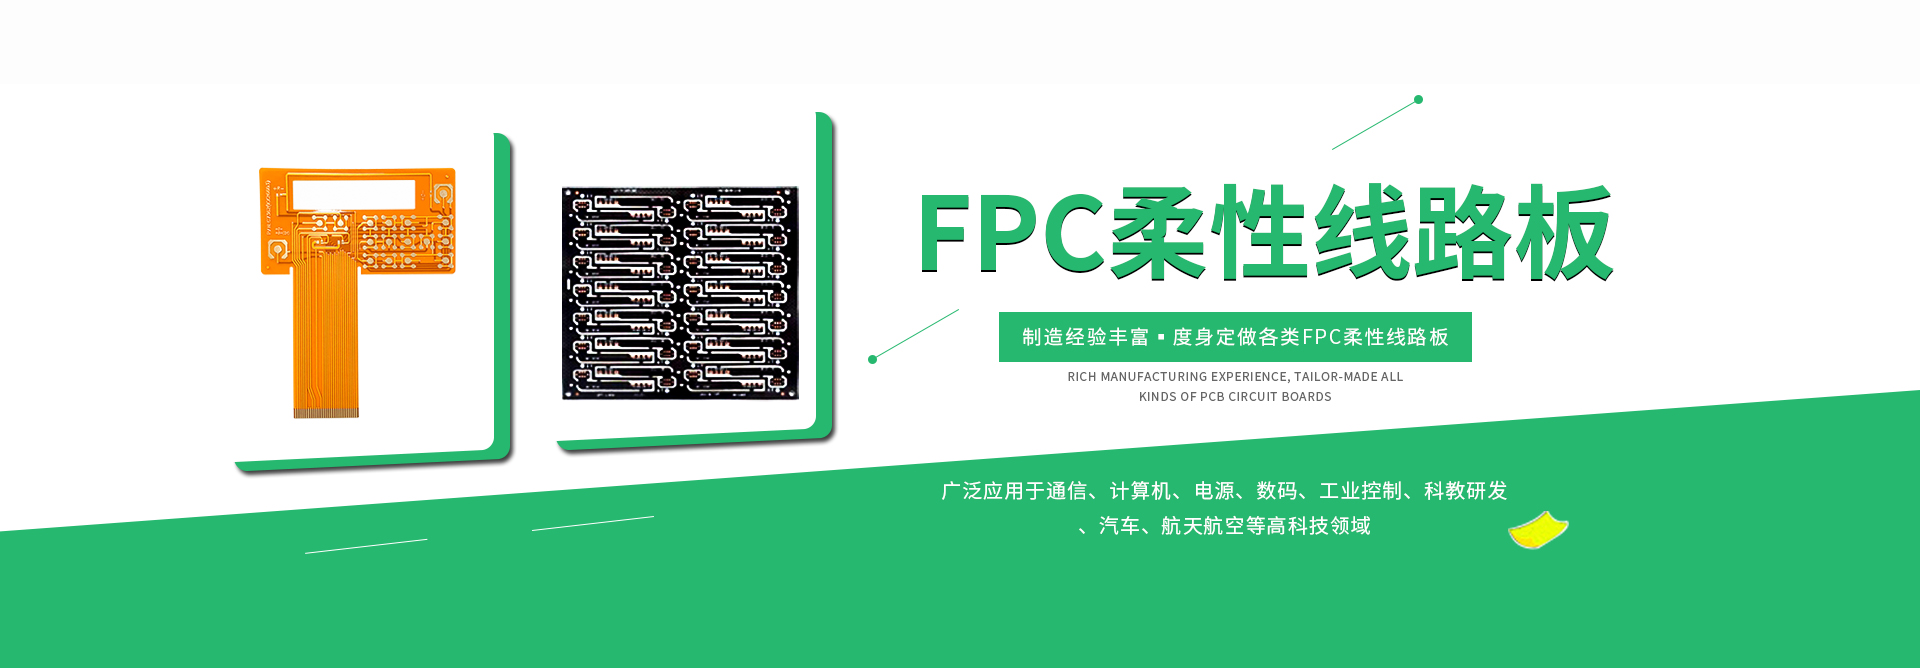 FPC排线,FPC软板,FPC线路板